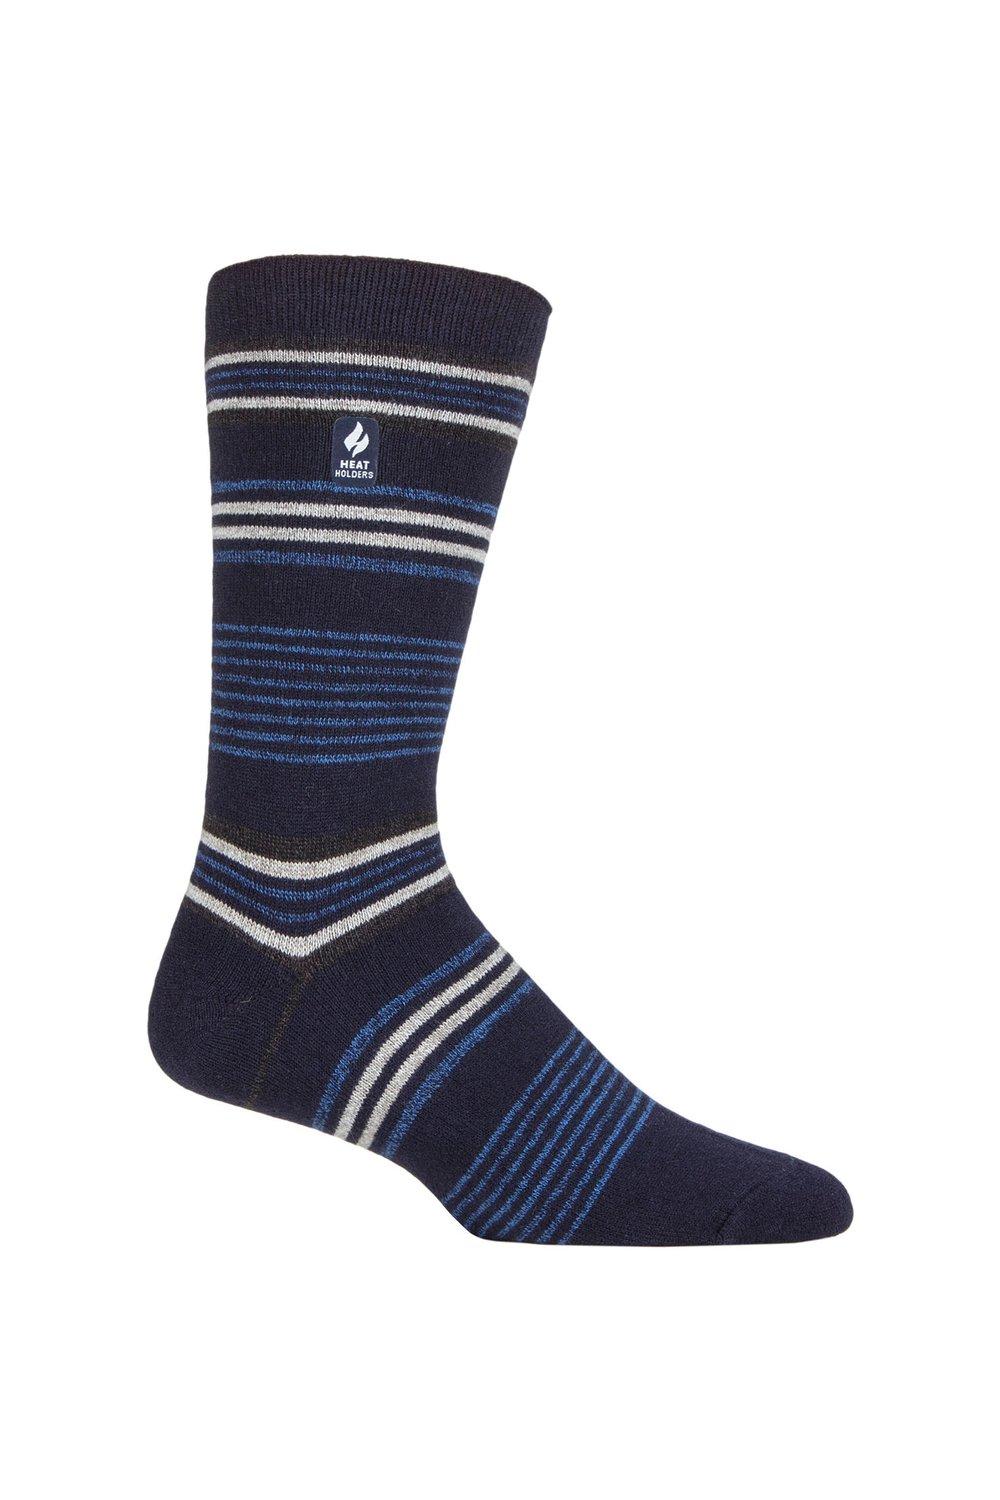 1 пара носков в полоску, аргайл и с рисунком 1.0 TOG Ultralite SOCKSHOP Heat Holders, синий фото